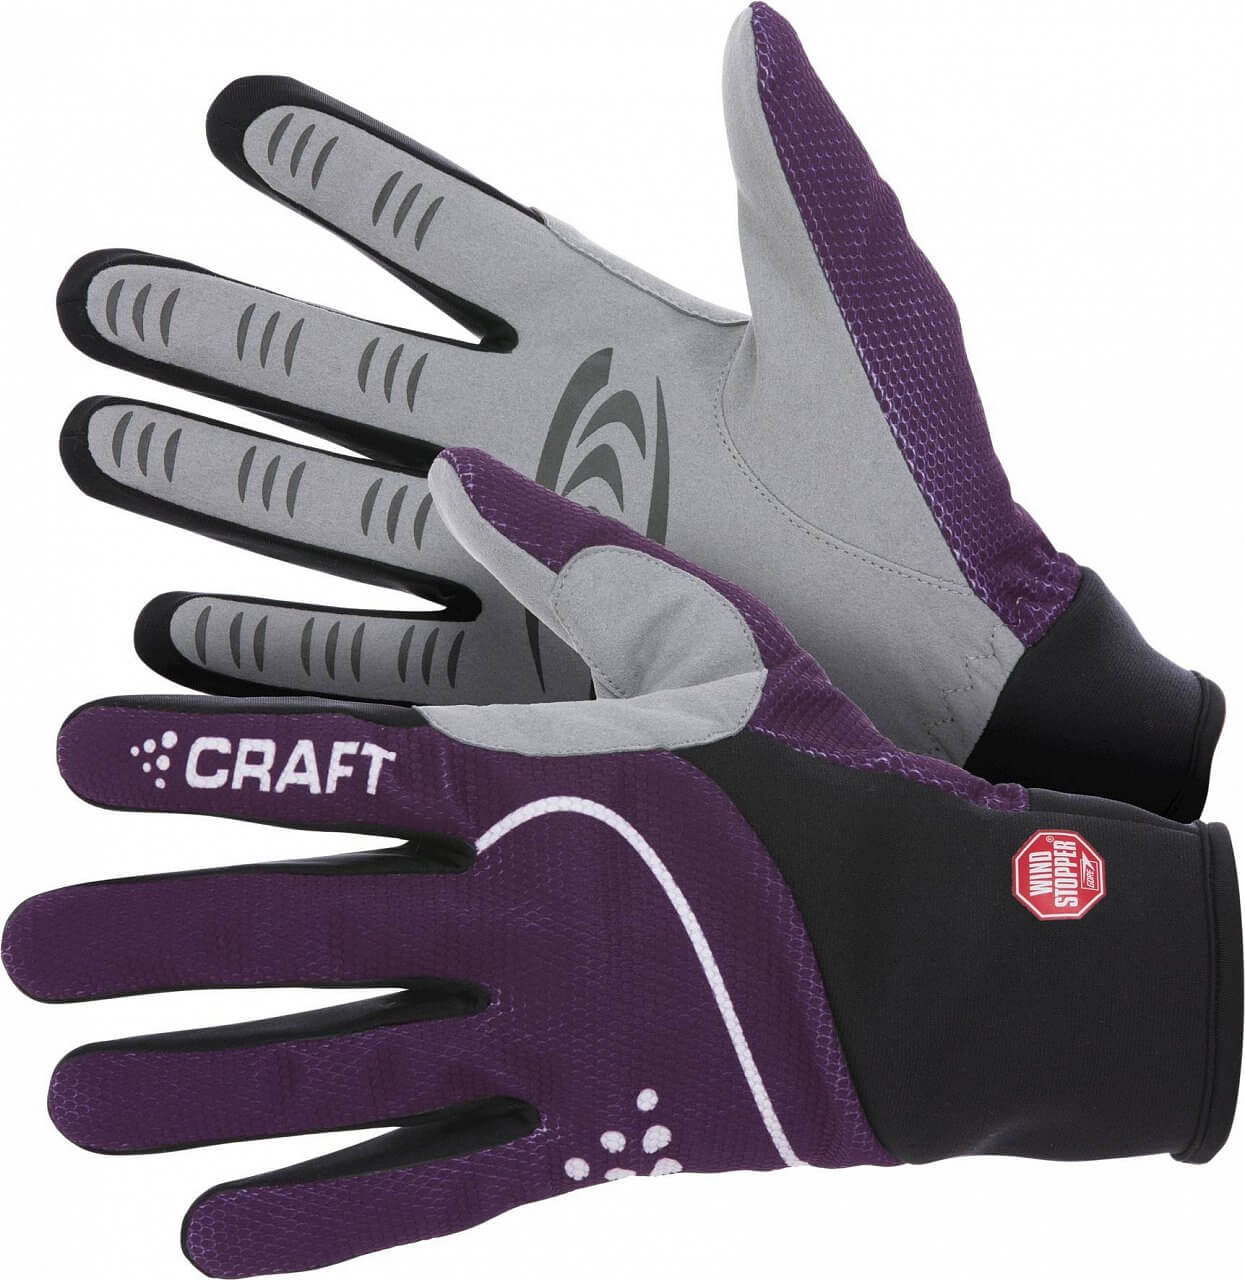 Unisex sportovní rukavice Craft Rukavice Power WS fialová